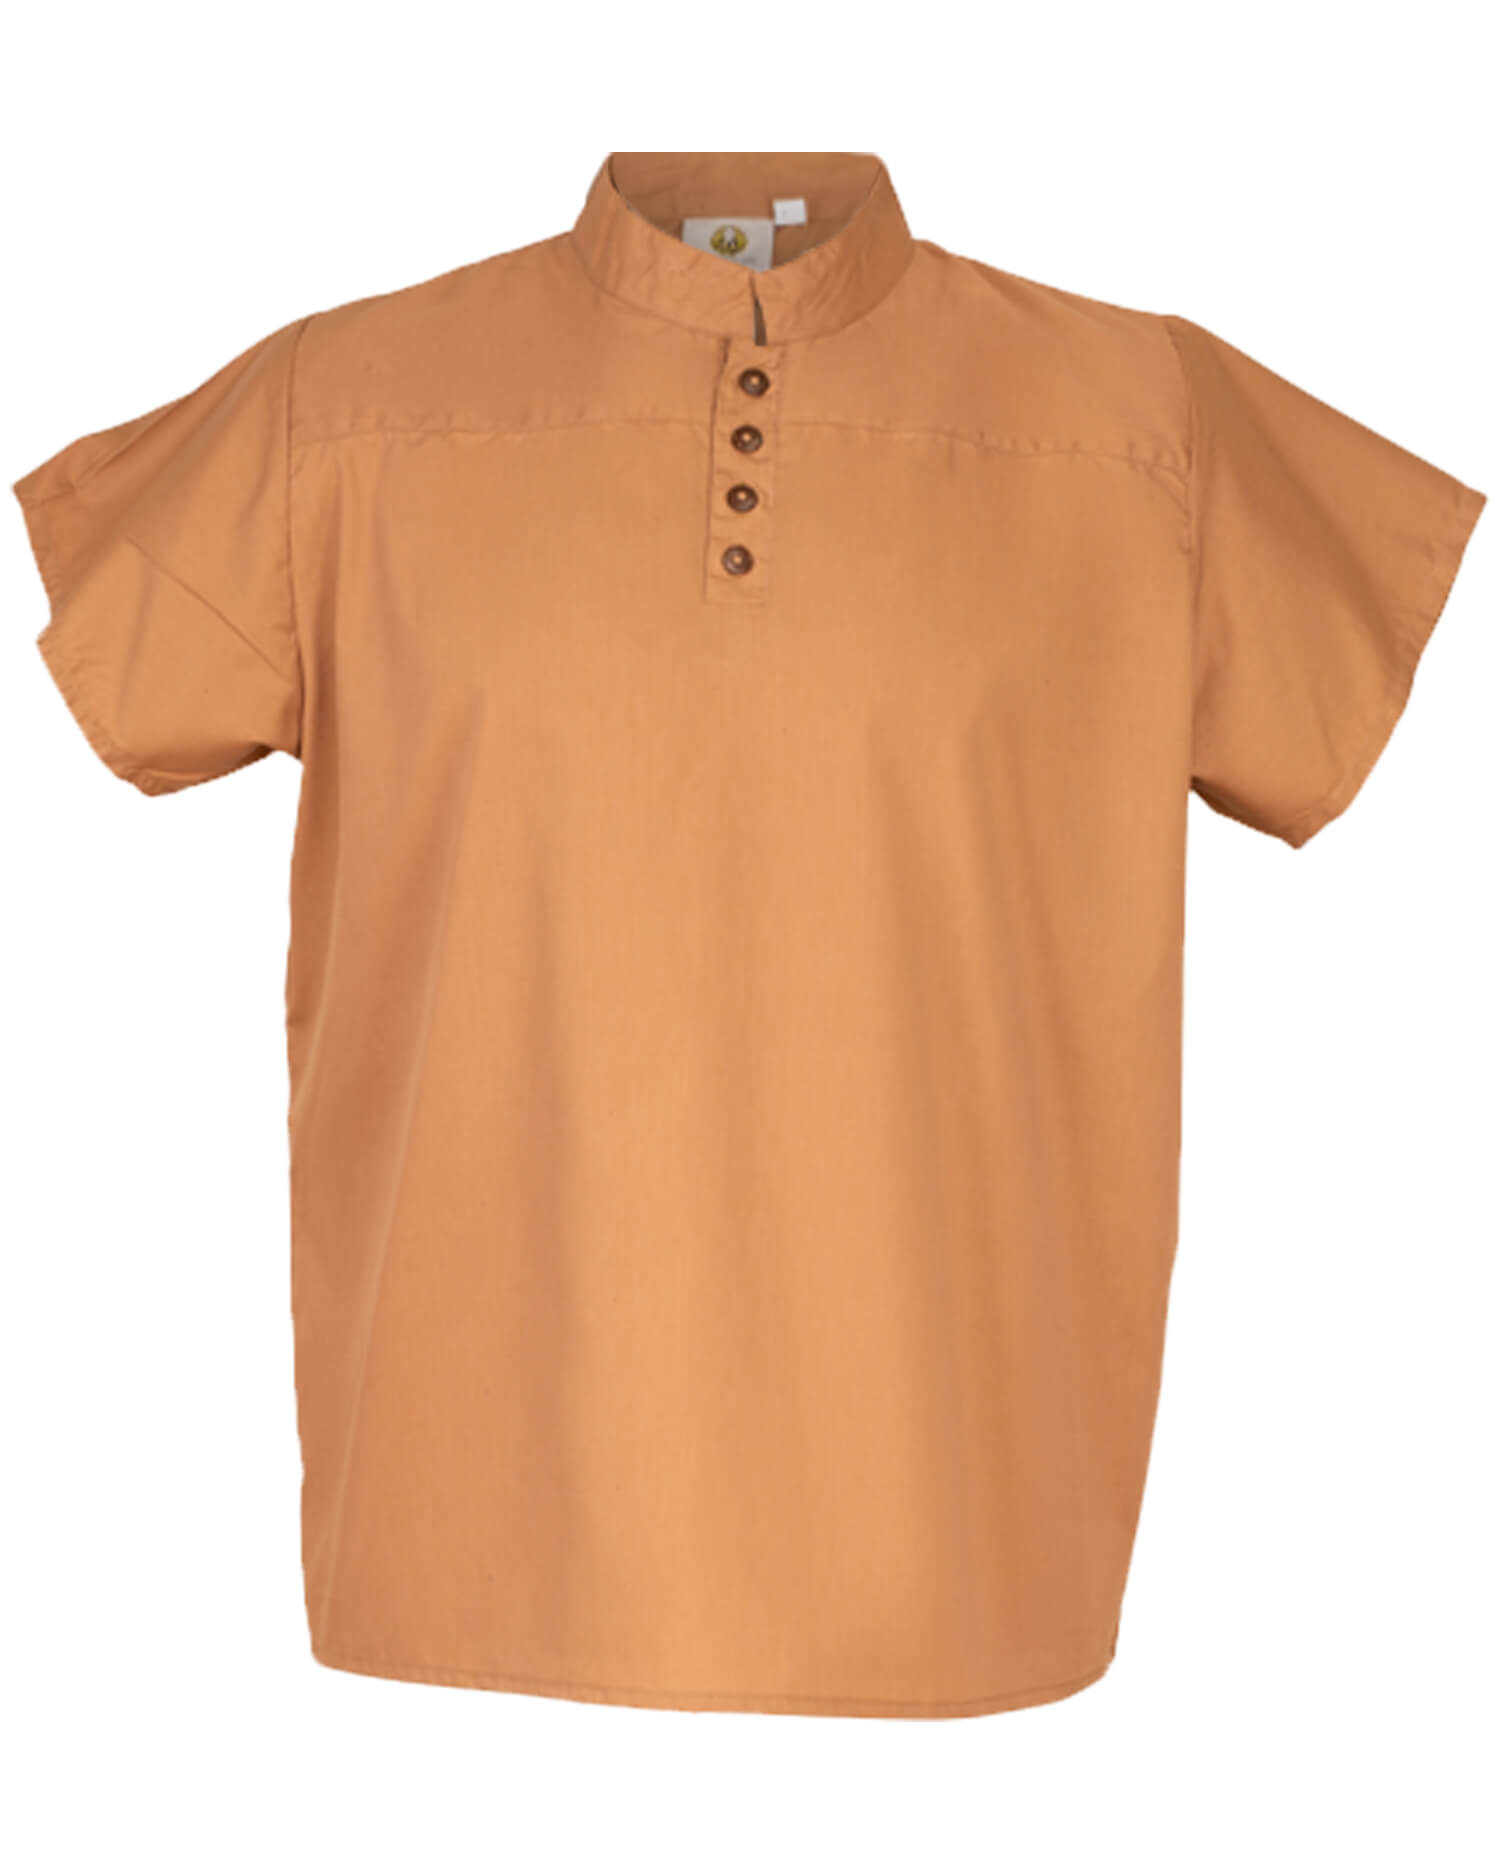 Bartold Hemd kurzarm leichte Baumwolle sand XL